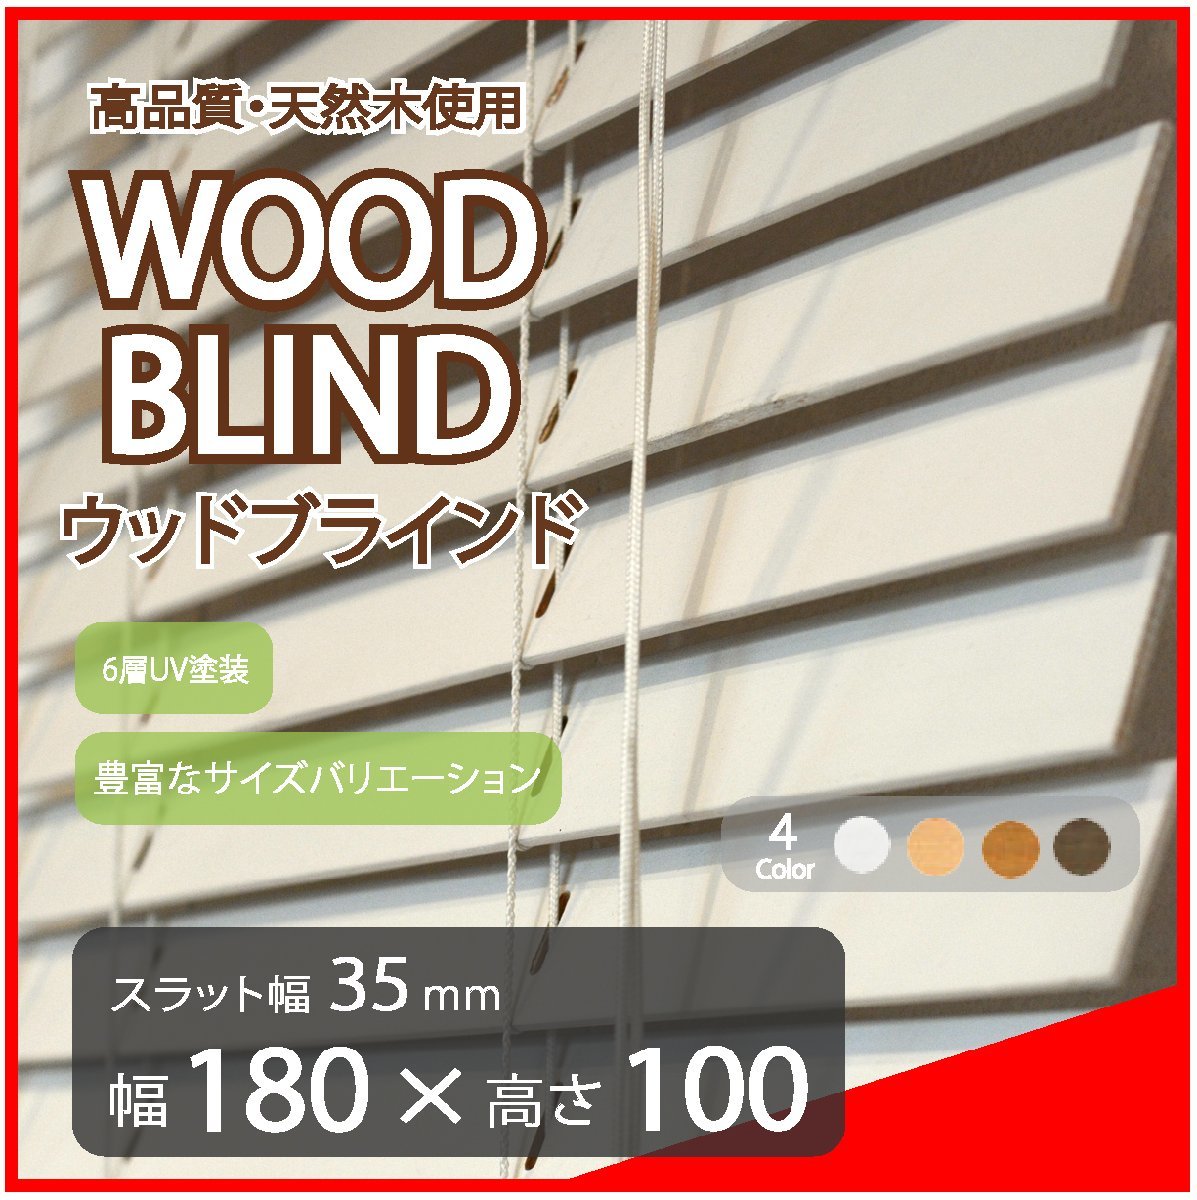 高品質 ウッドブラインド 木製 ブラインド 既成サイズ スラット(羽根)幅35mm 幅180cm×高さ100cm ホワイト